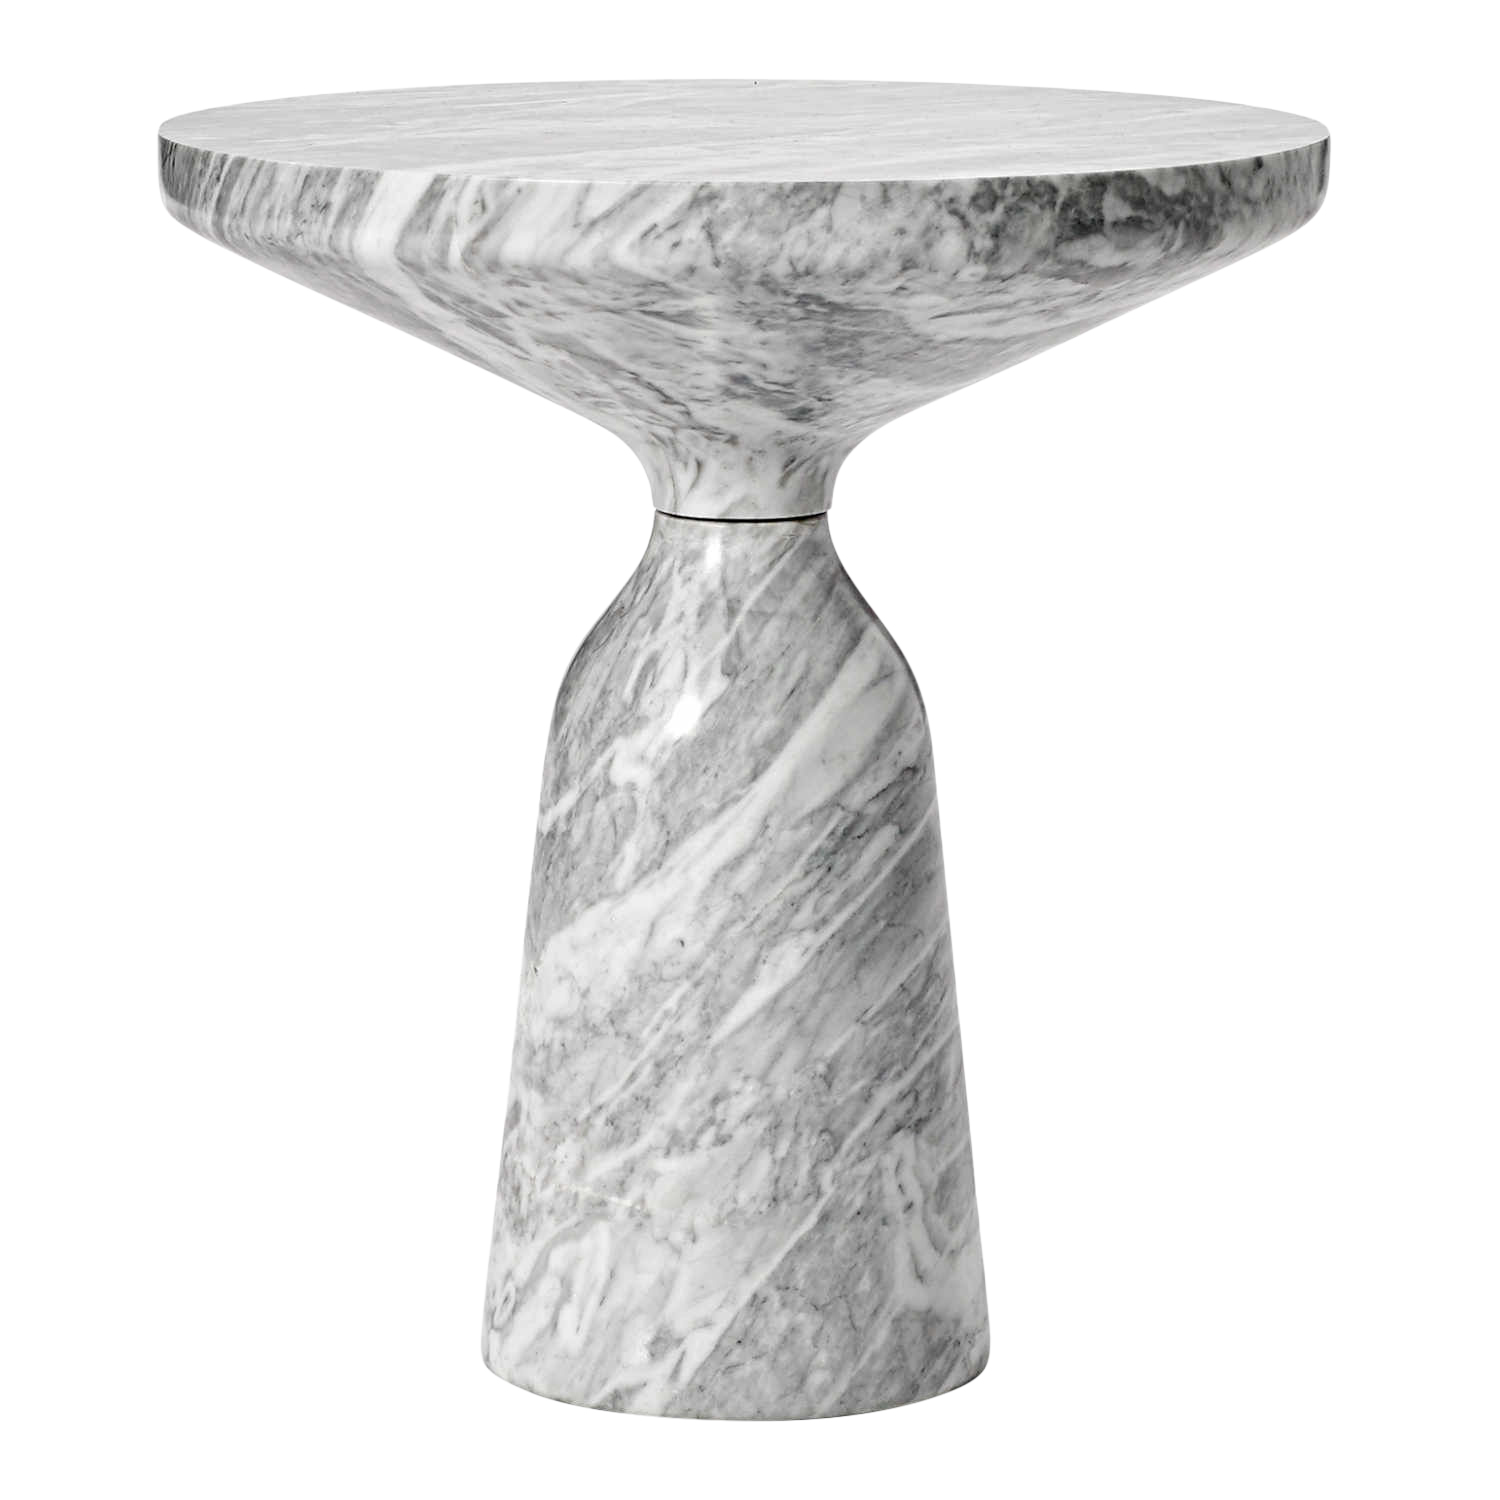 Bell Side Table Marble Beistelltisch, Ausführung marmor, nero marquina, Oberfläche poliert von ClassiCon